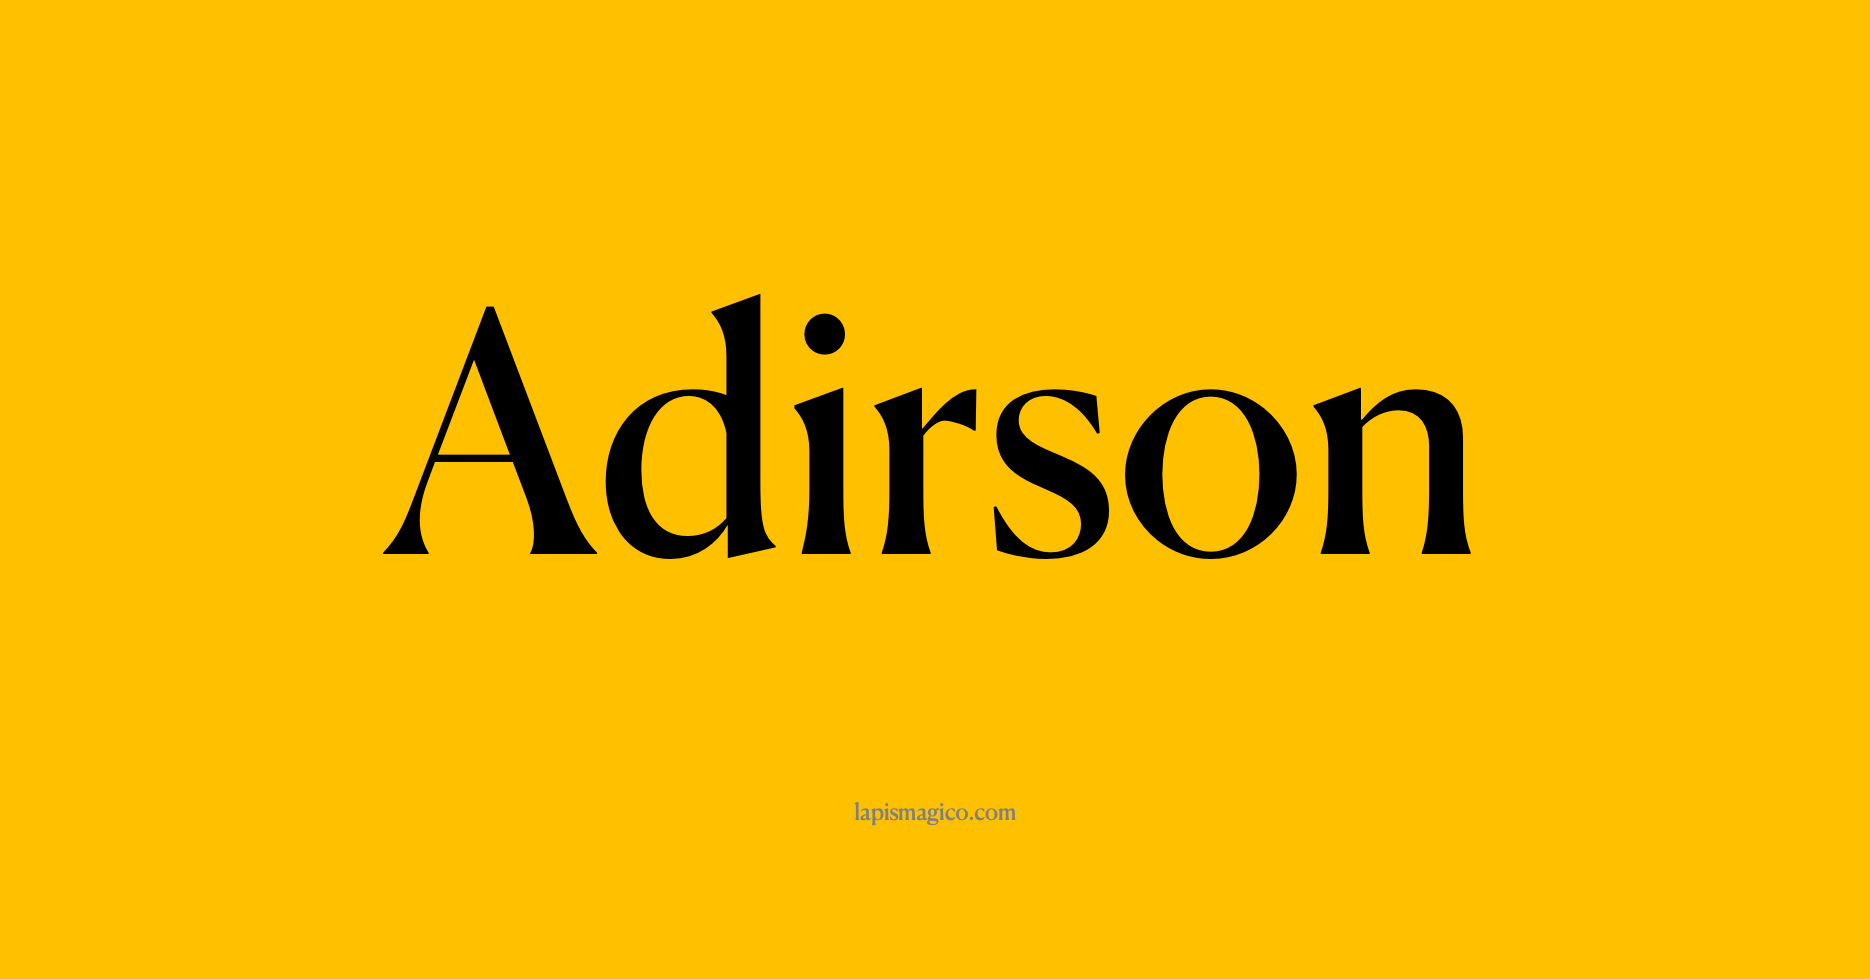 Nome Adirson